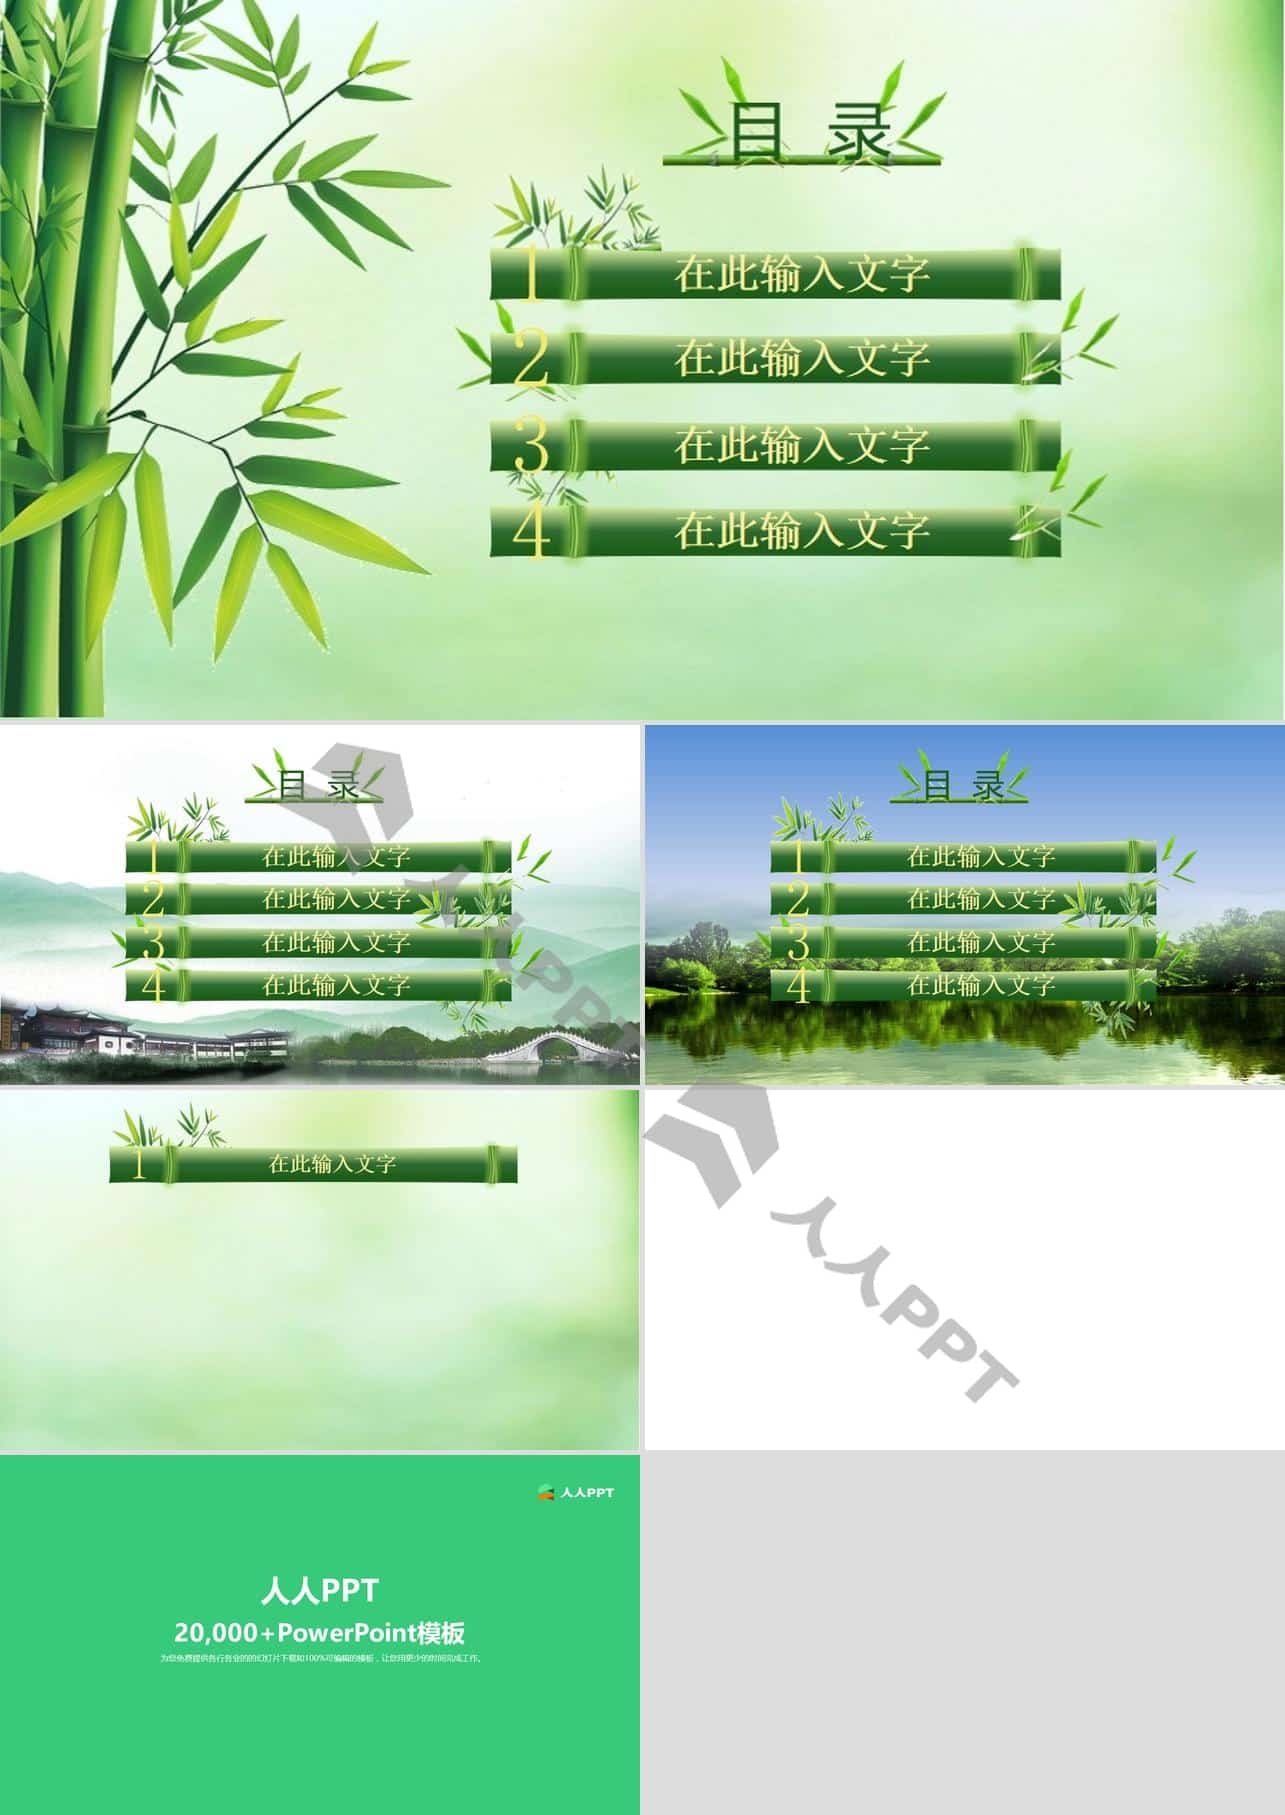 PPT绘制的竹节 竹叶 中国风竹PPT模板长图